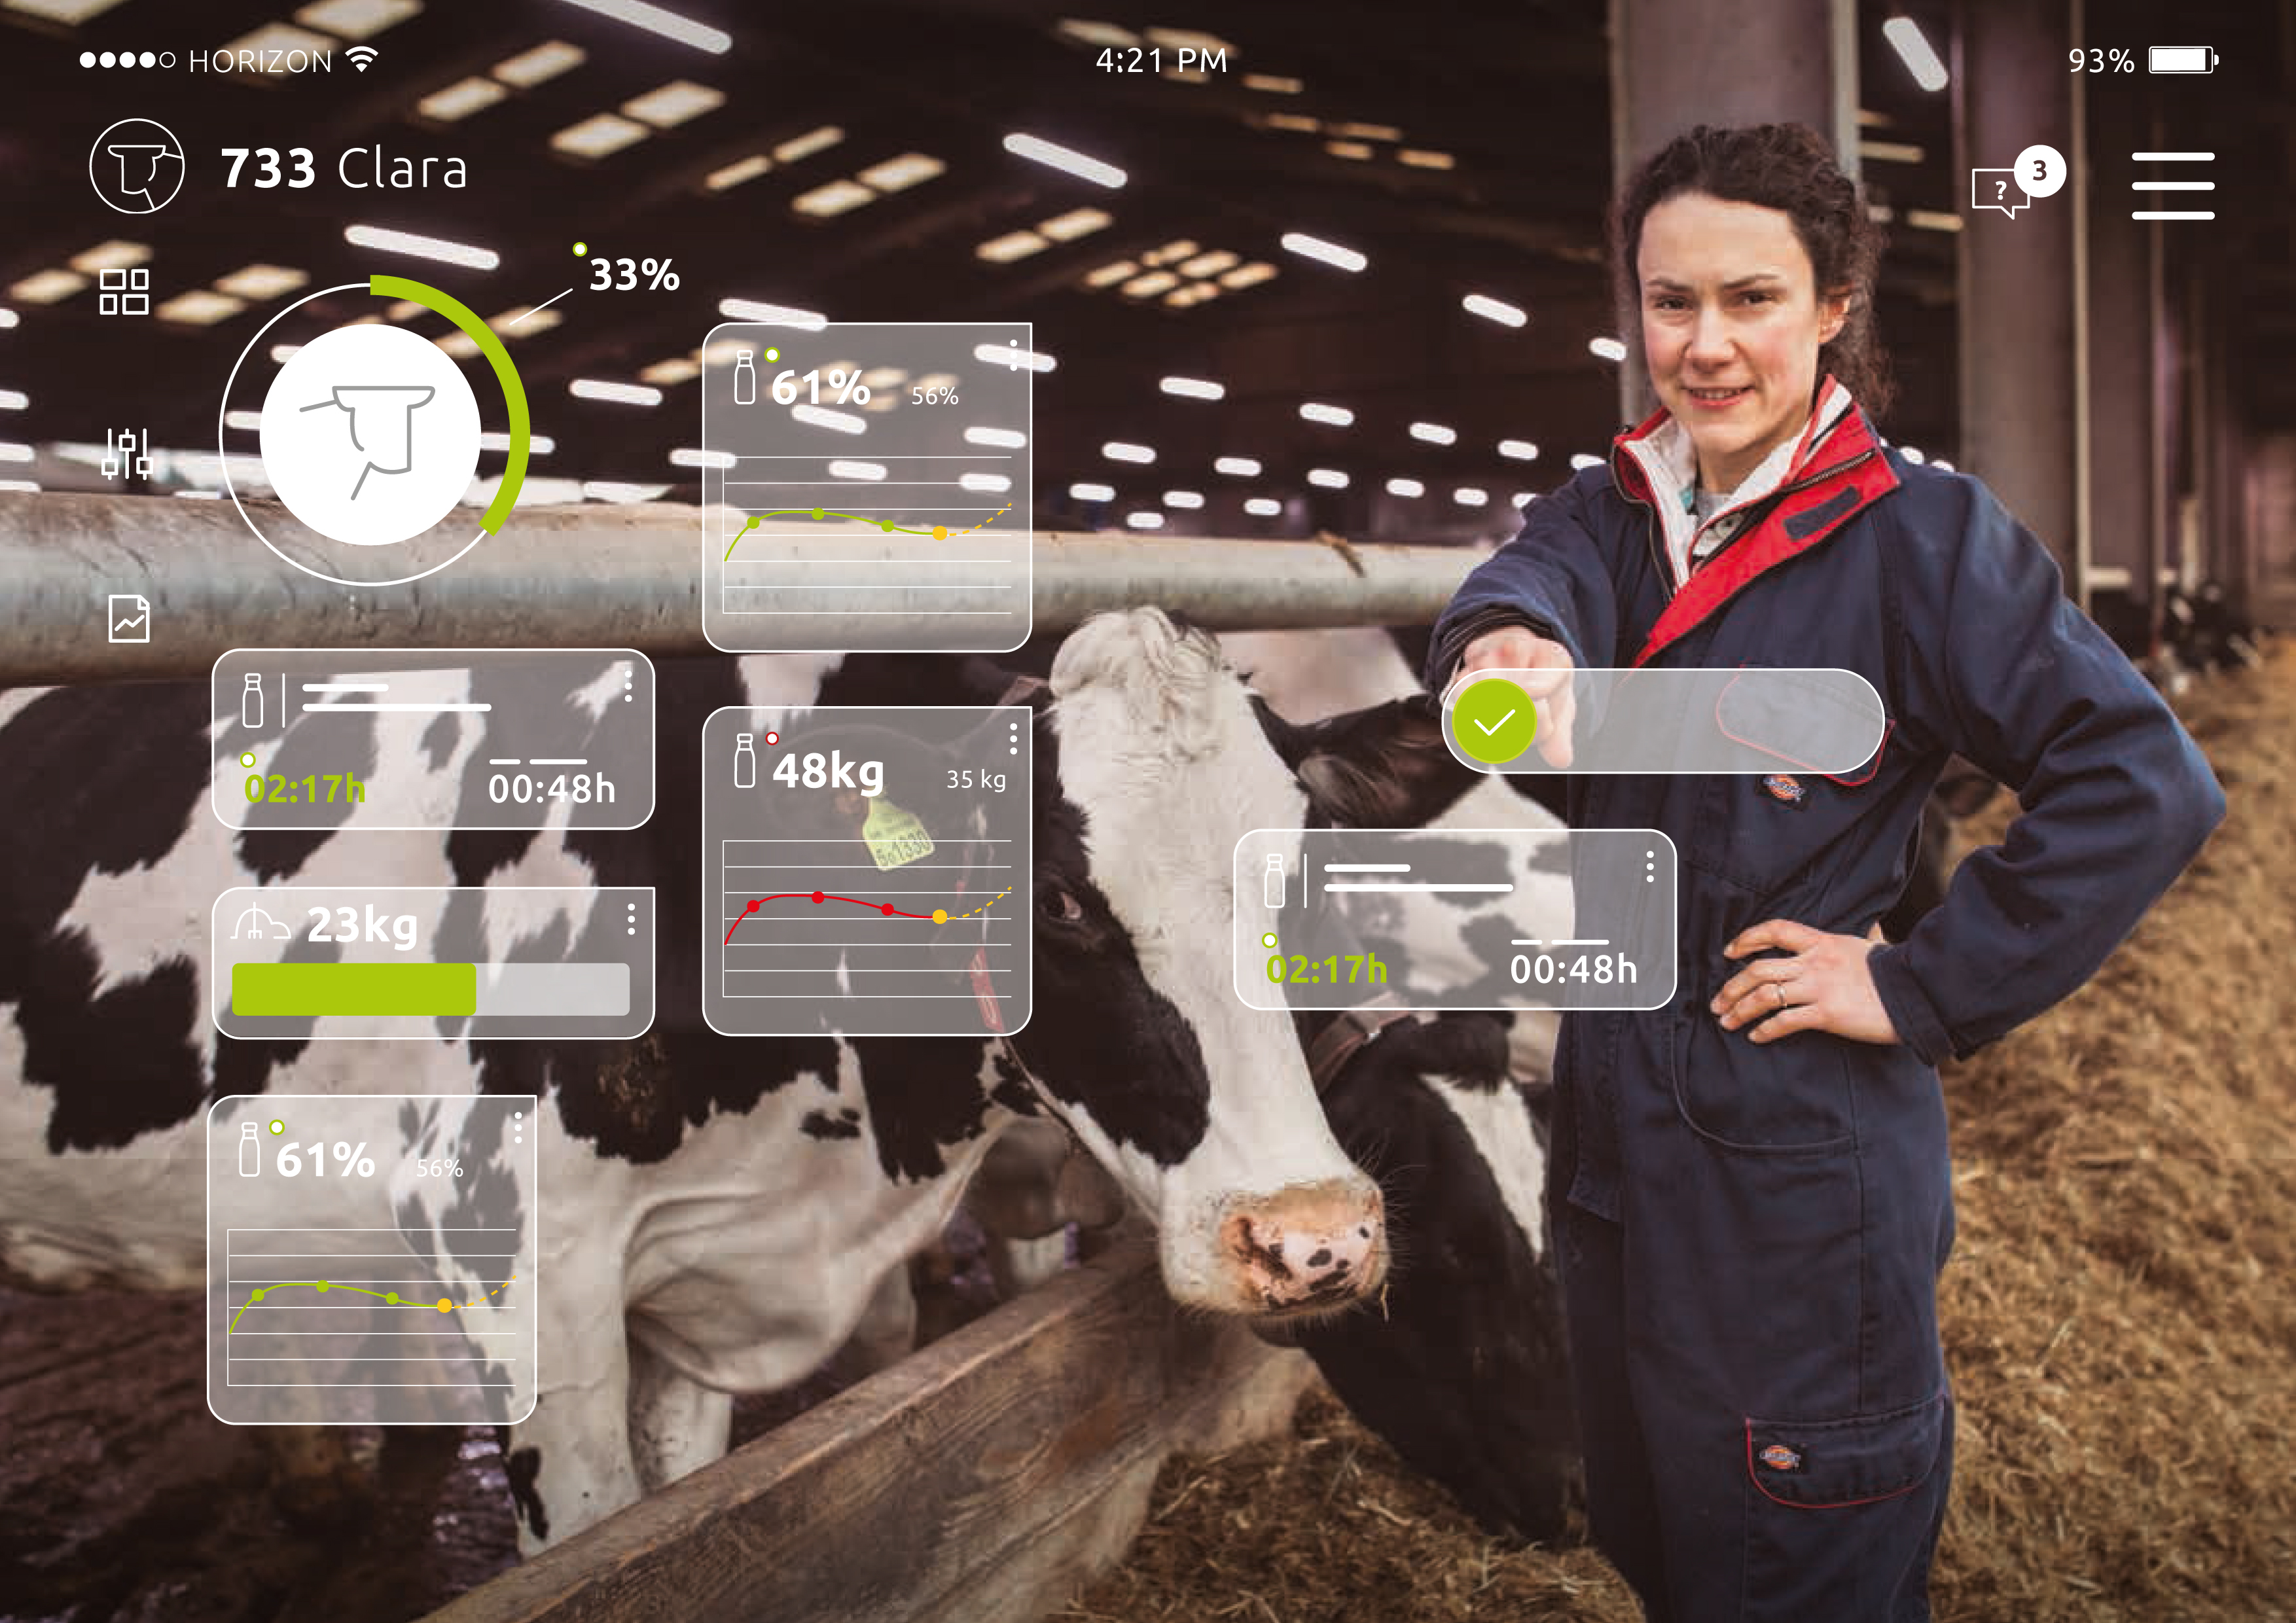 Afbeelding 1. In het boerenbedrijf van de toekomst is automatisering nog verder doorgevoerd.